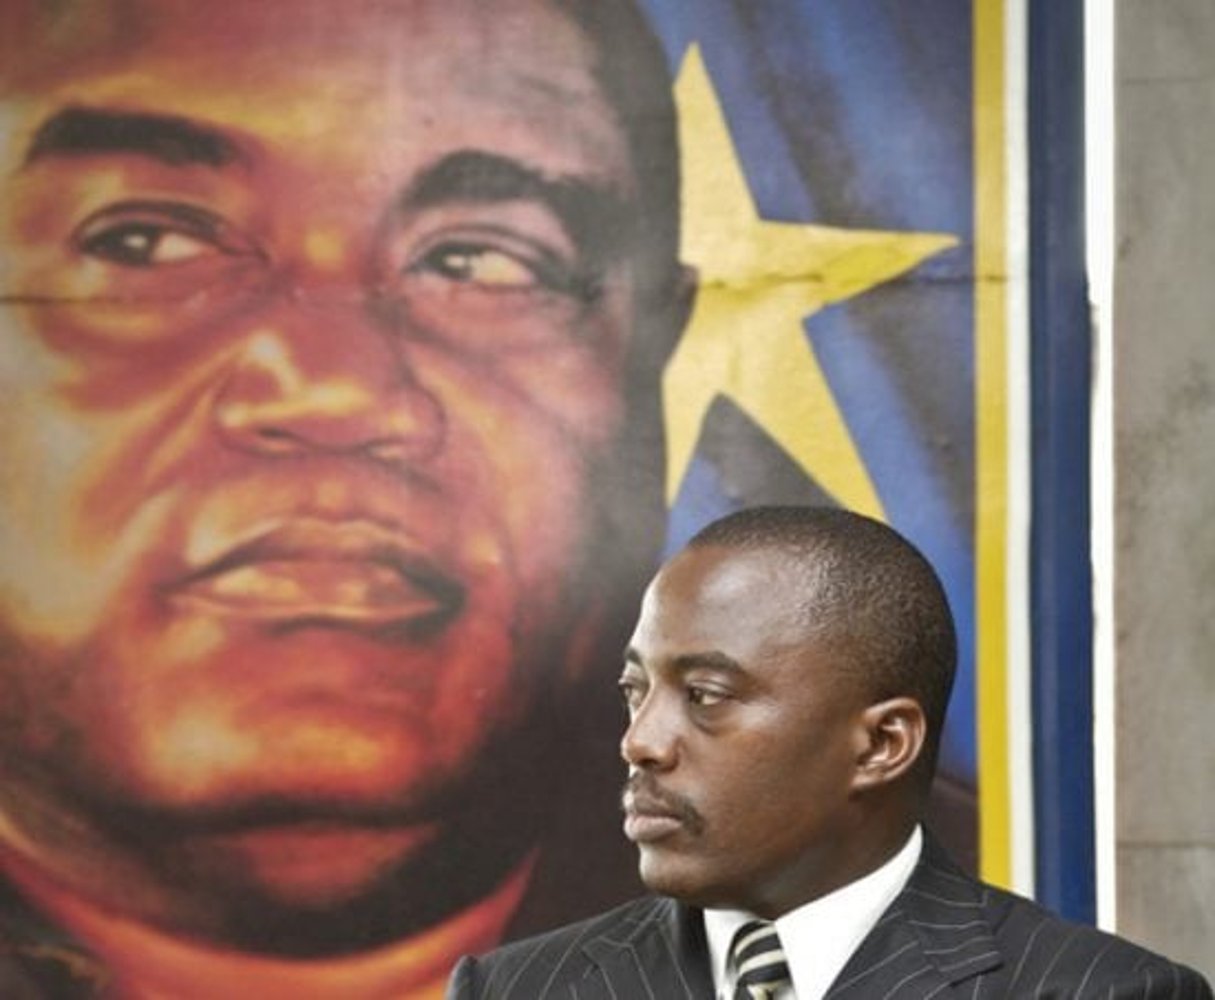 Joseph Kabila, président de la RDC, devant le portrait de son père, le 23 mars 2006 à Kinshasa. © Vincent Fournier/JA